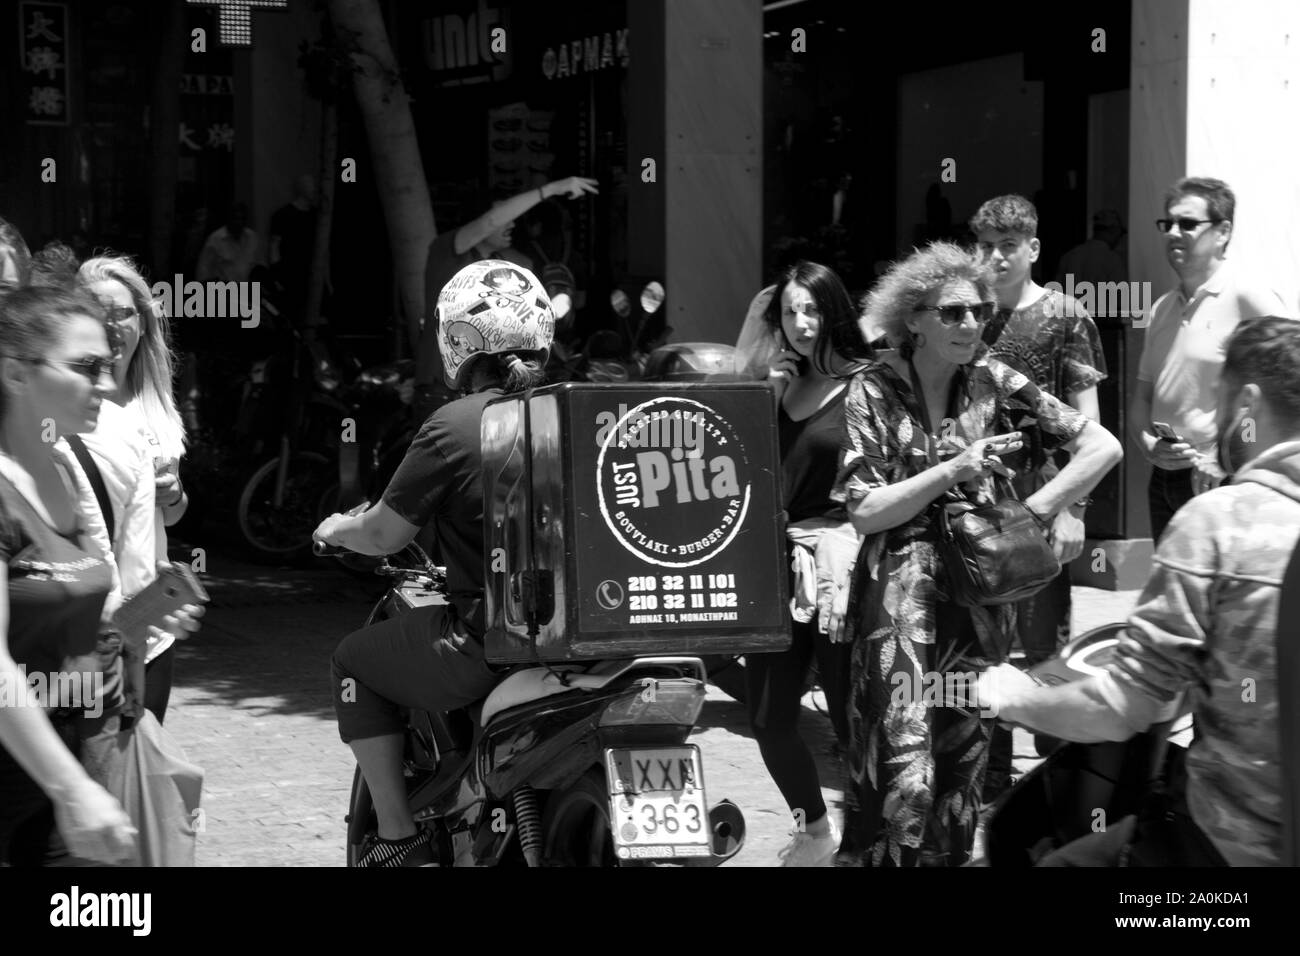 Sólo pita hombre entrega en moto ermou Atenas Attica Grecia Foto de stock